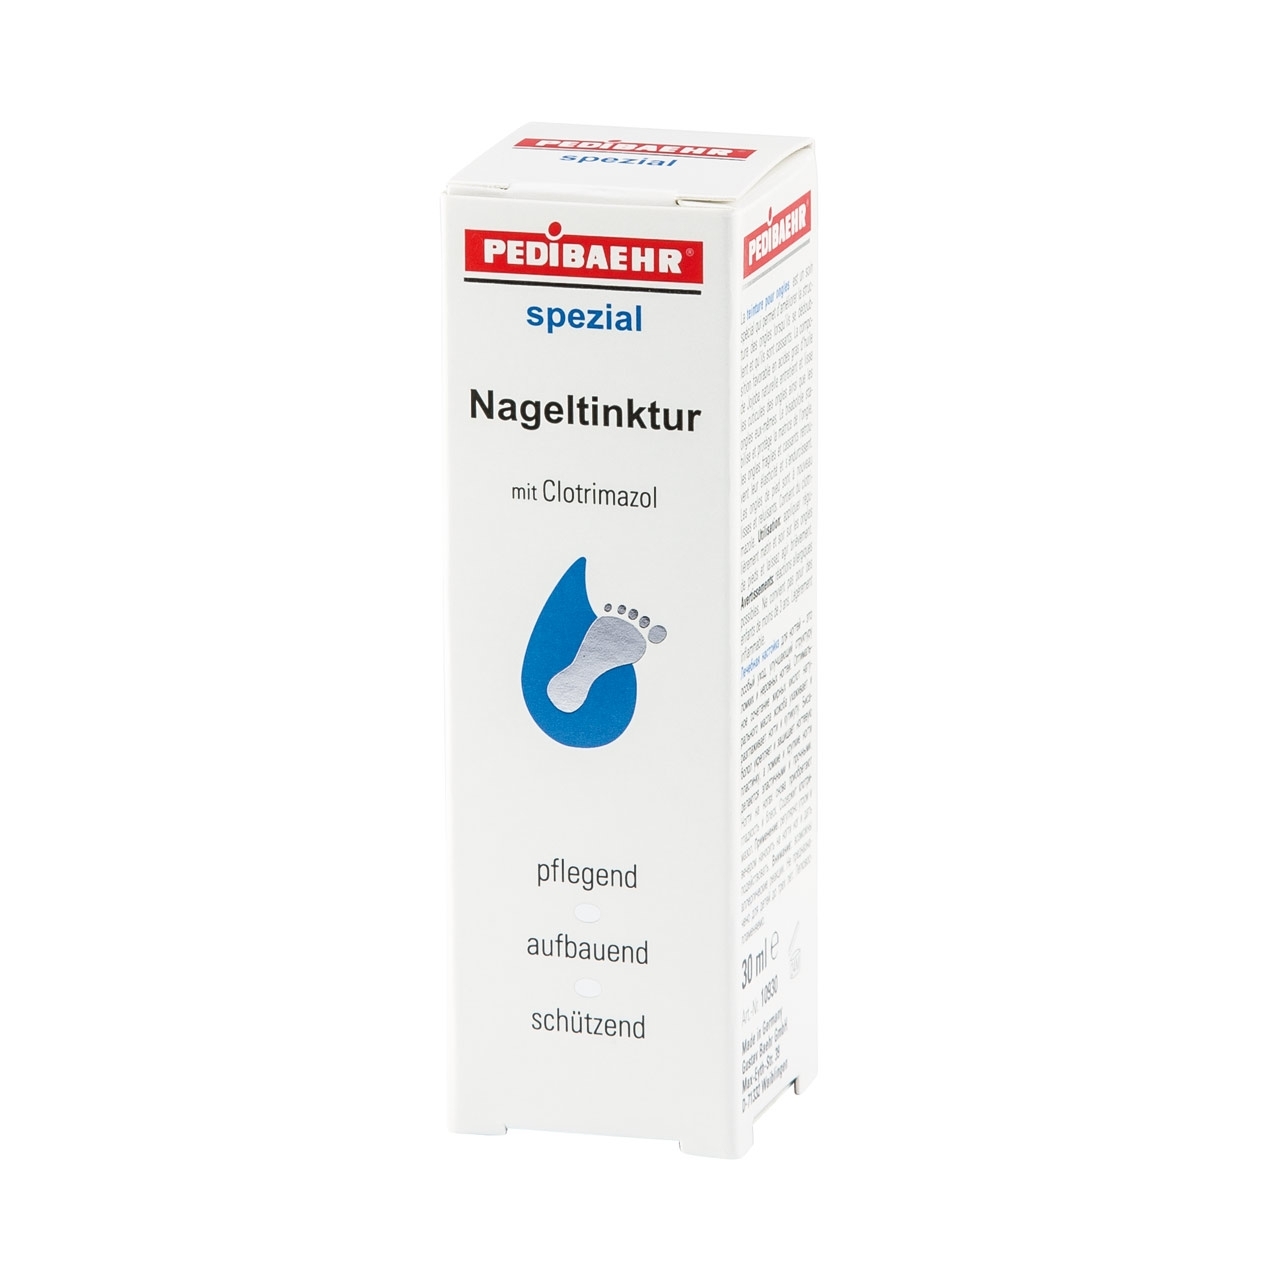 PEDIBAEHR - Nageltinktur mit Clotrimazol, 30ml, Sprayflasche